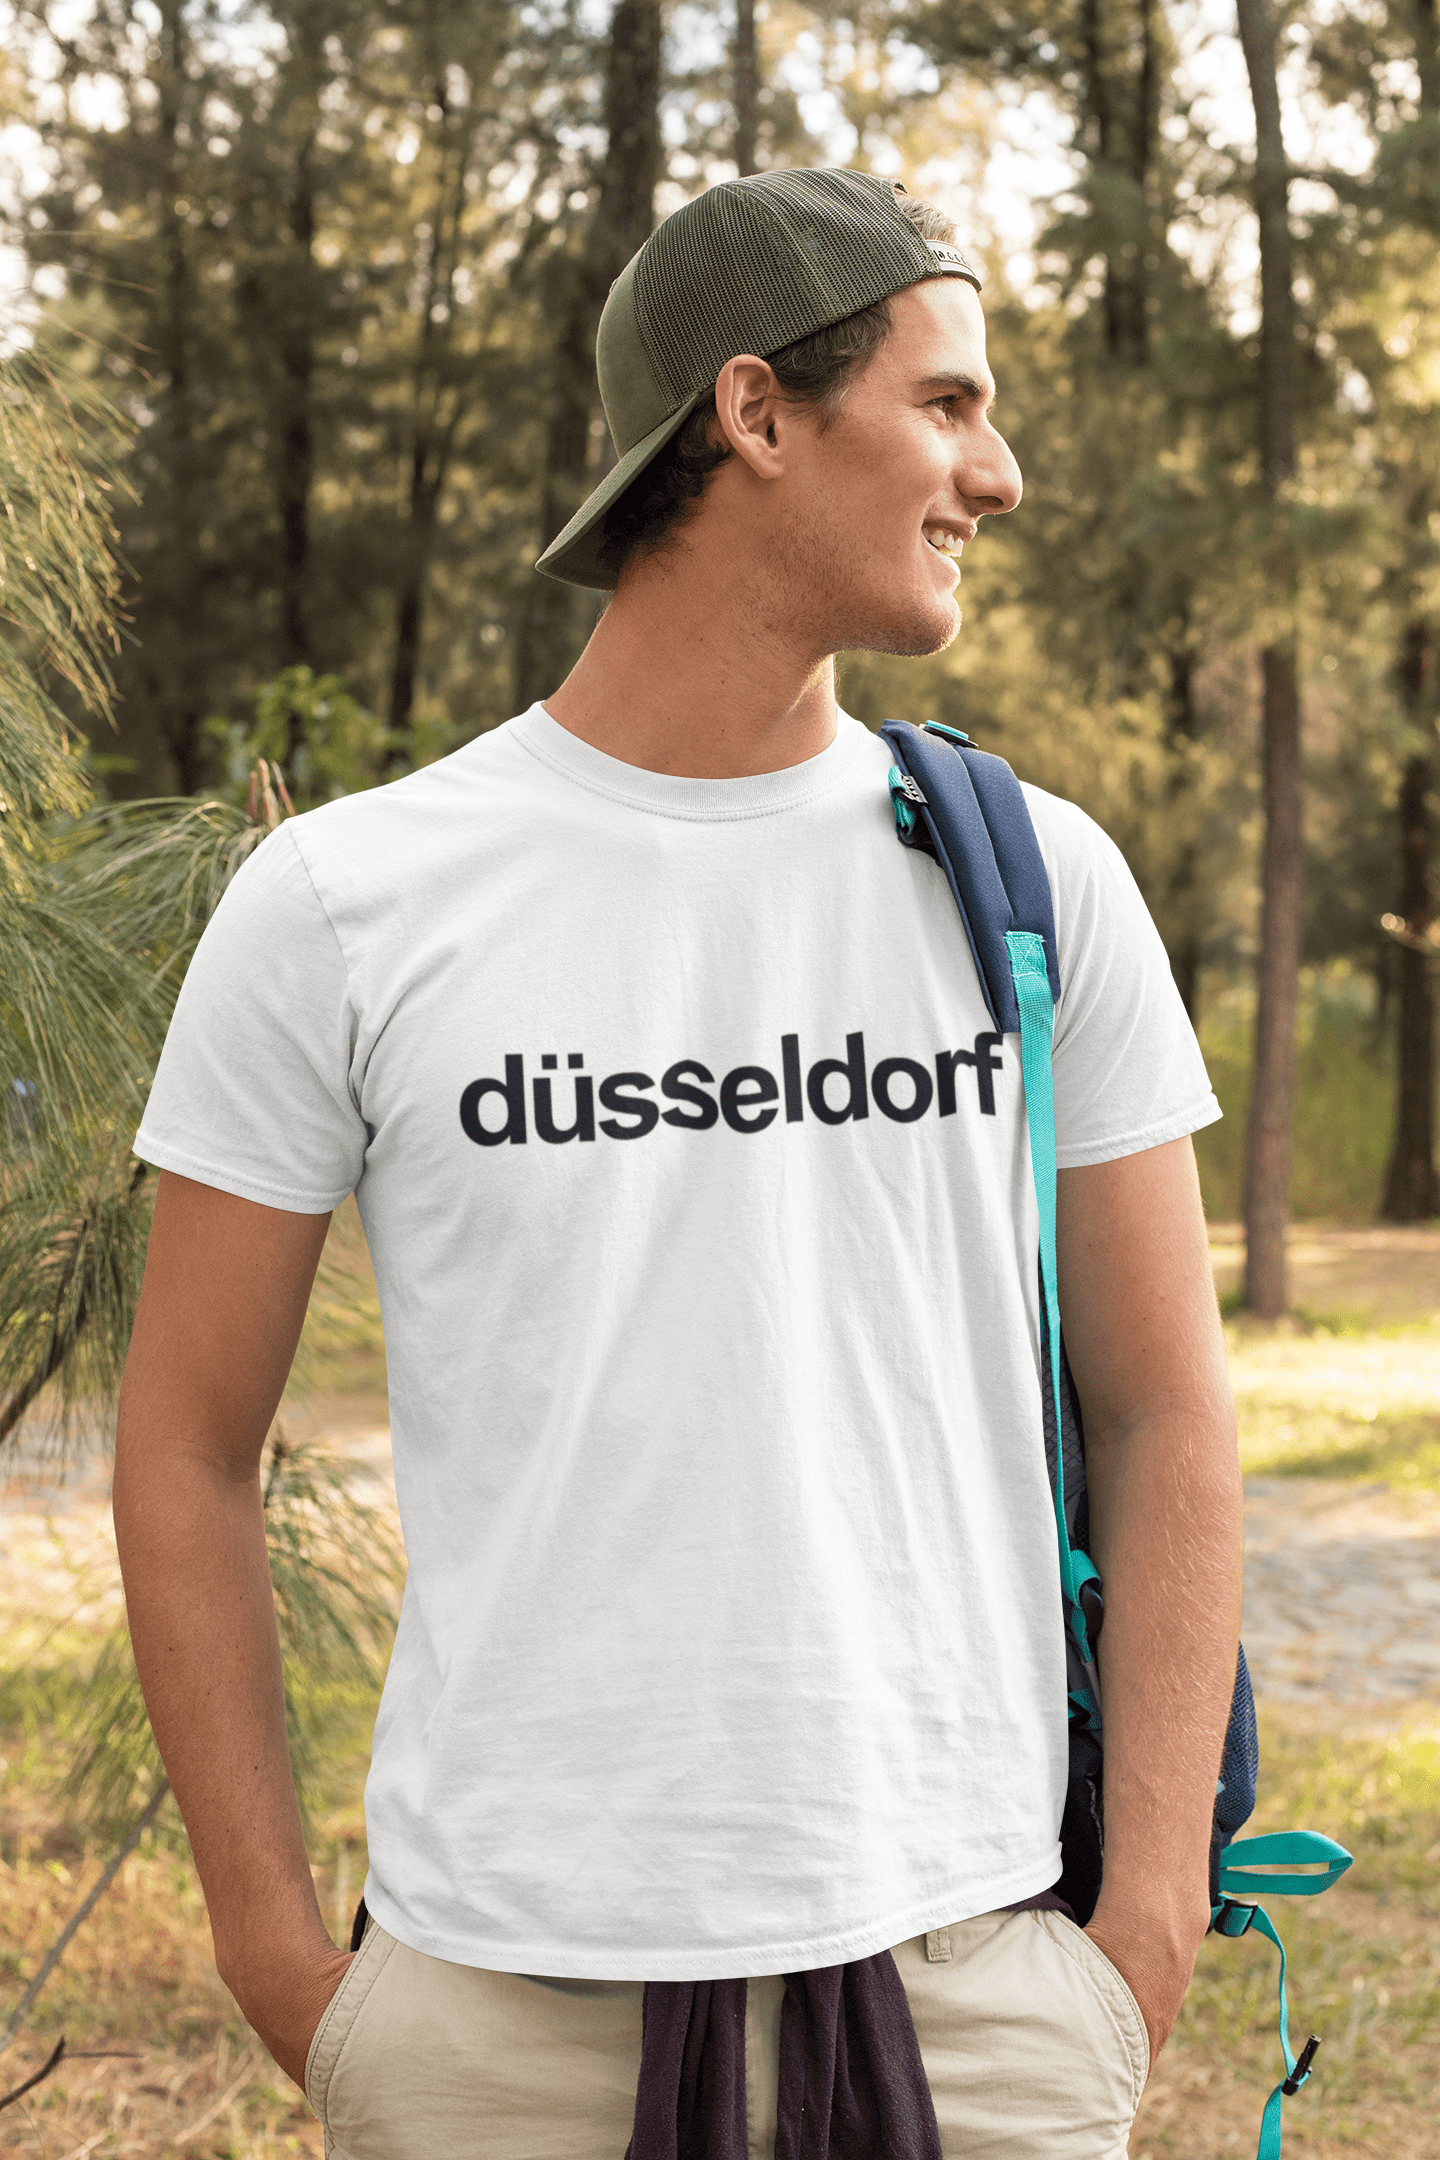 Du?sseldorf Men's Short Sleeve Round Neck T-shirt 00047